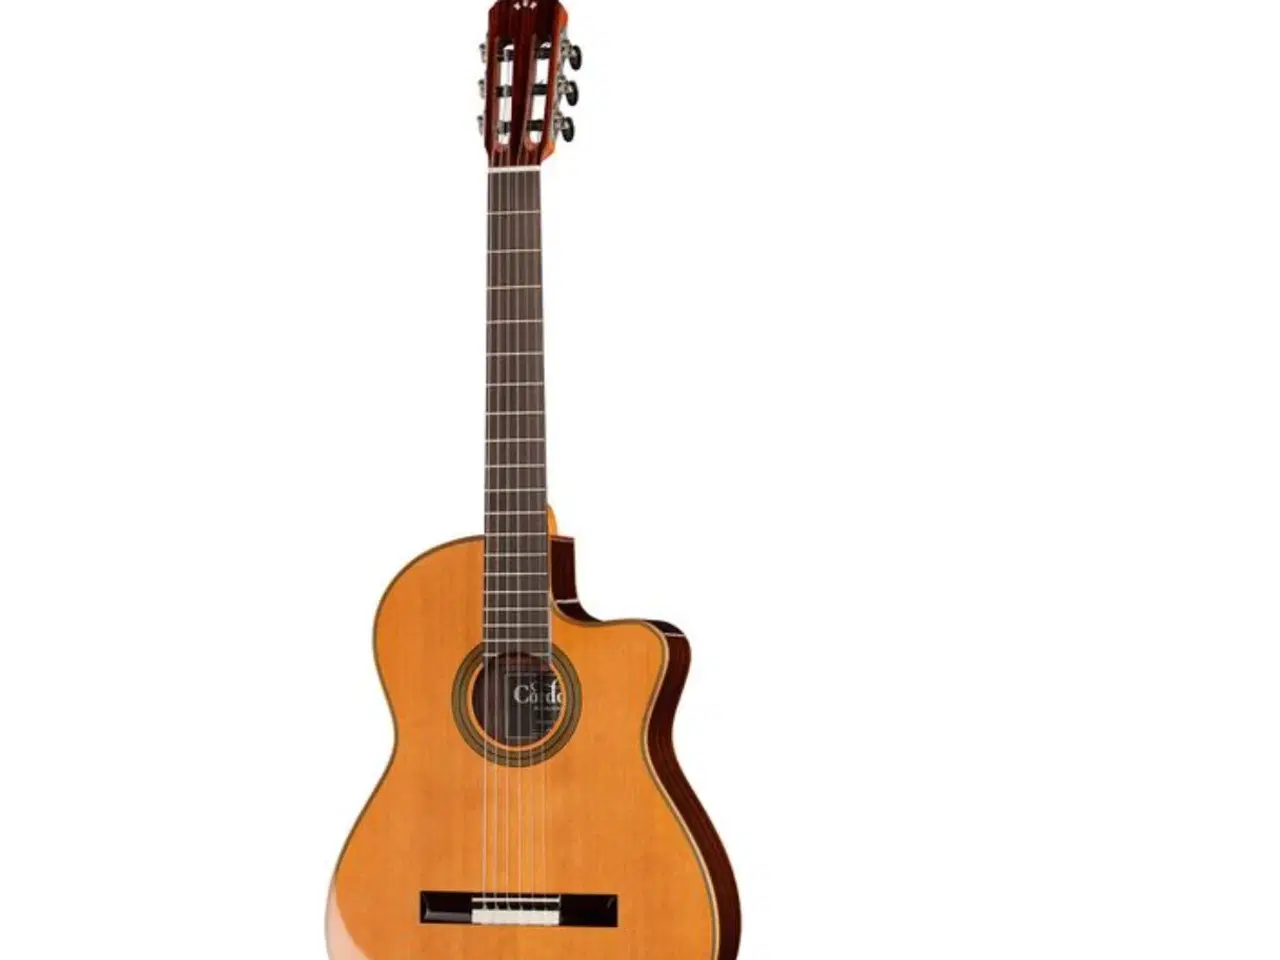 Billede 1 - Spansk guitar købes brugt